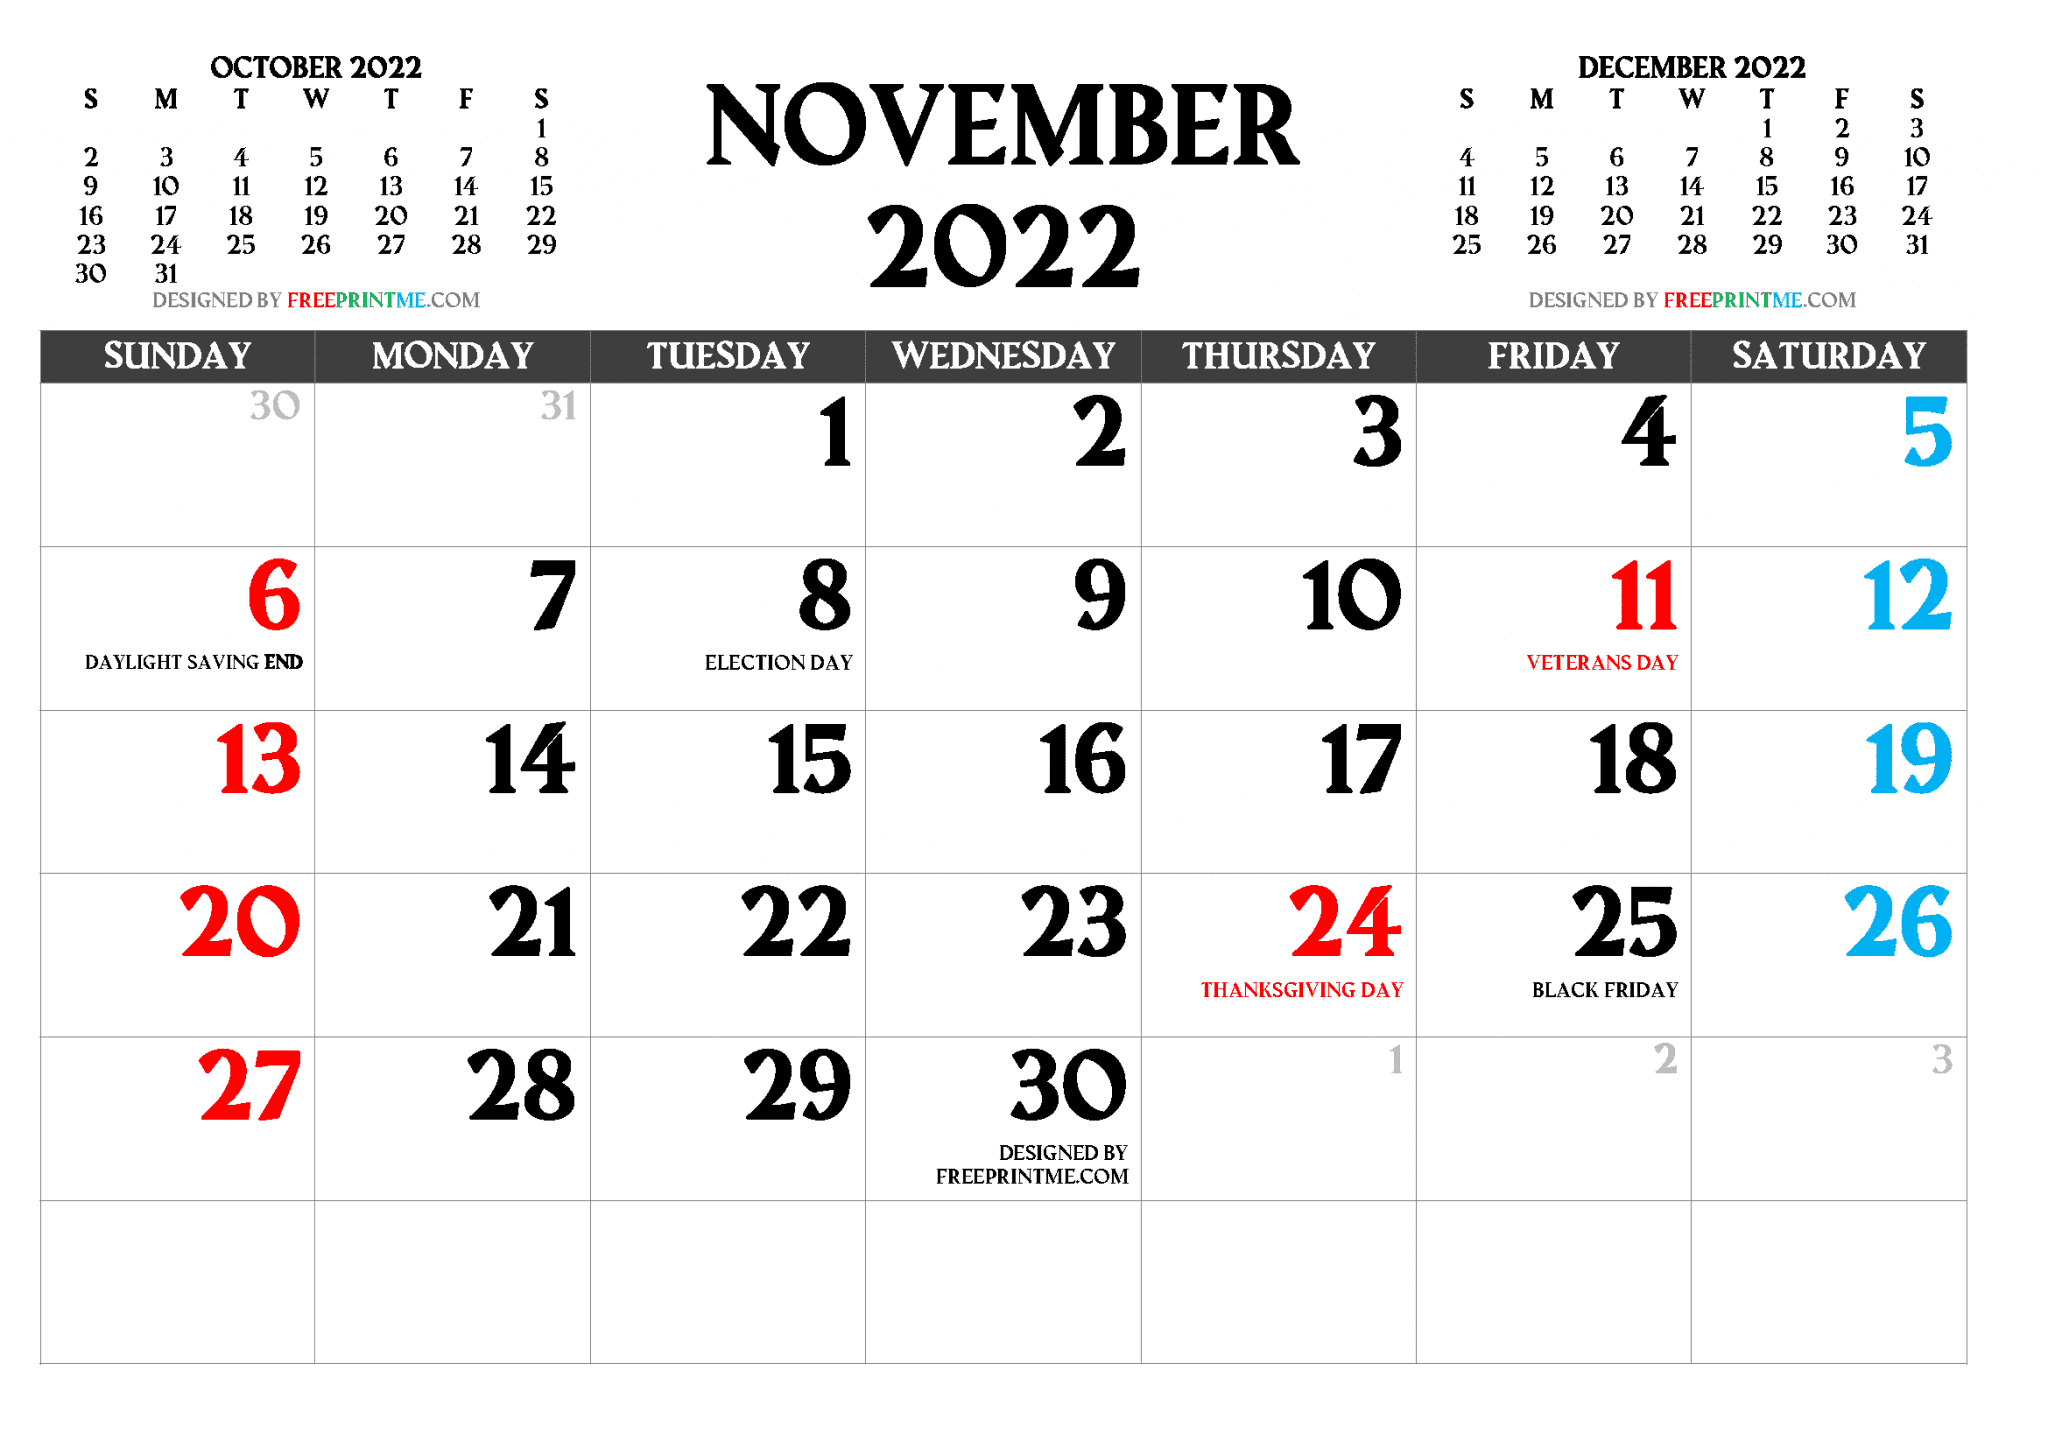 fsu-uconn-spring-calendar-printable-pdf-november-2022-calendar-calendar